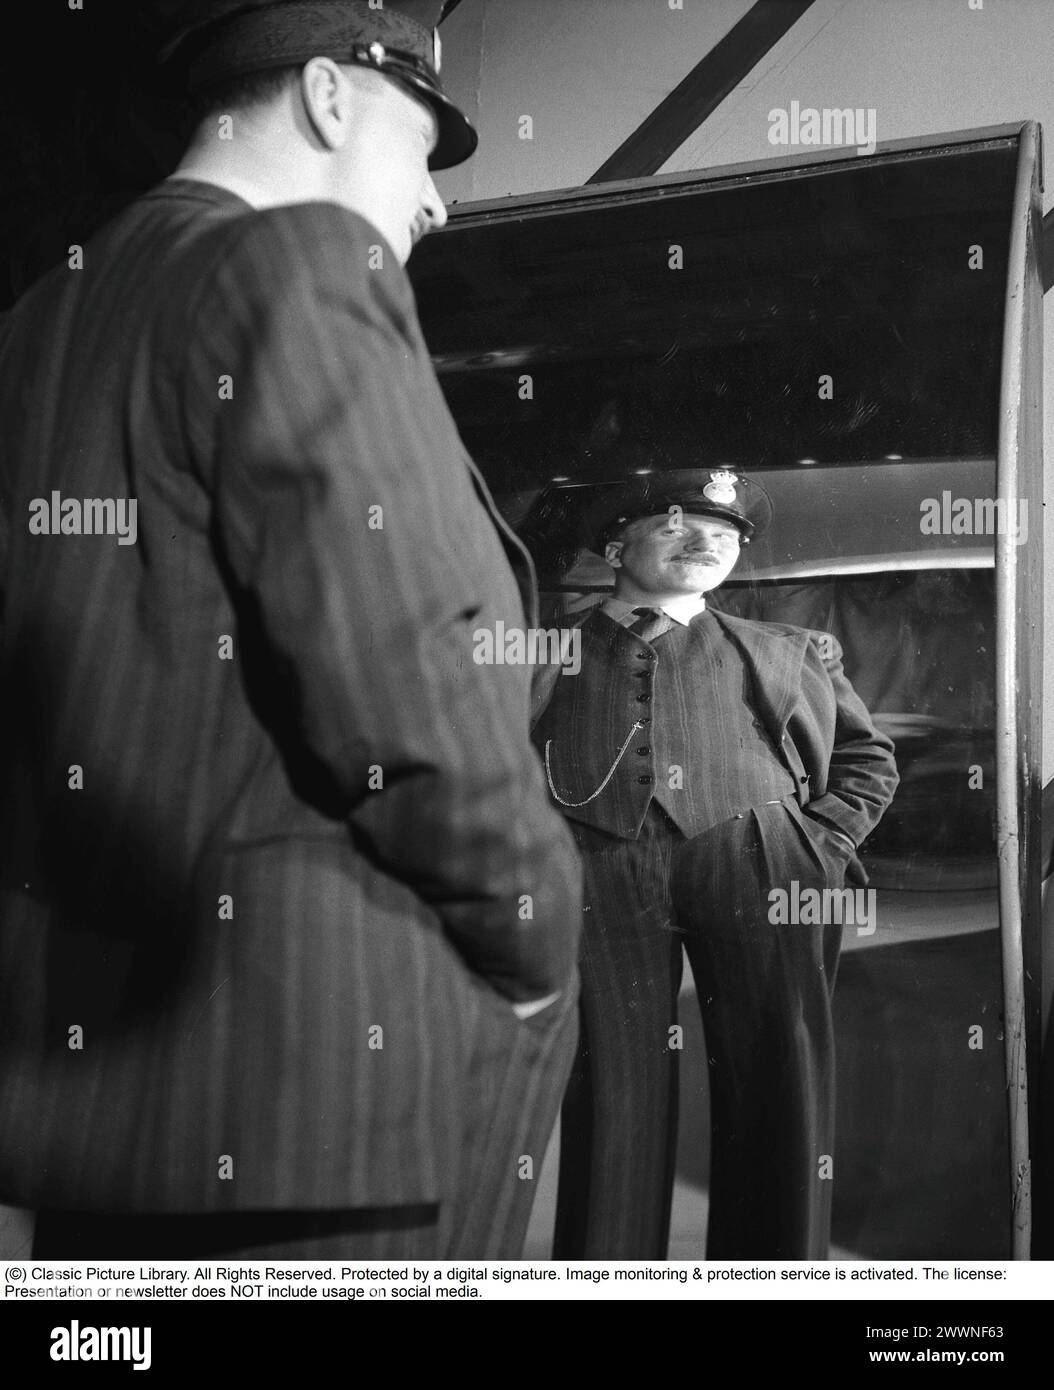 Lachende Spiegel 1947. Schauspieler Sigge Furst in der Spiegelattraktion Skrattkammaren im Vergnügungspark Gröna Lund, wo er sich in einem lachenden Spiegel sieht. Normale Spiegel haben eine flache Oberfläche, während die Spiegel in einem Vergnügungspark sowohl nach innen als auch nach außen gewölbt, konkav und konvex sein könnten. Ein Spiegel lässt einen hoch und dünn aussehen. Andere spiegeln kurz und dick. 1947. Kristoffersson Ref. AE45-11 Stockfoto